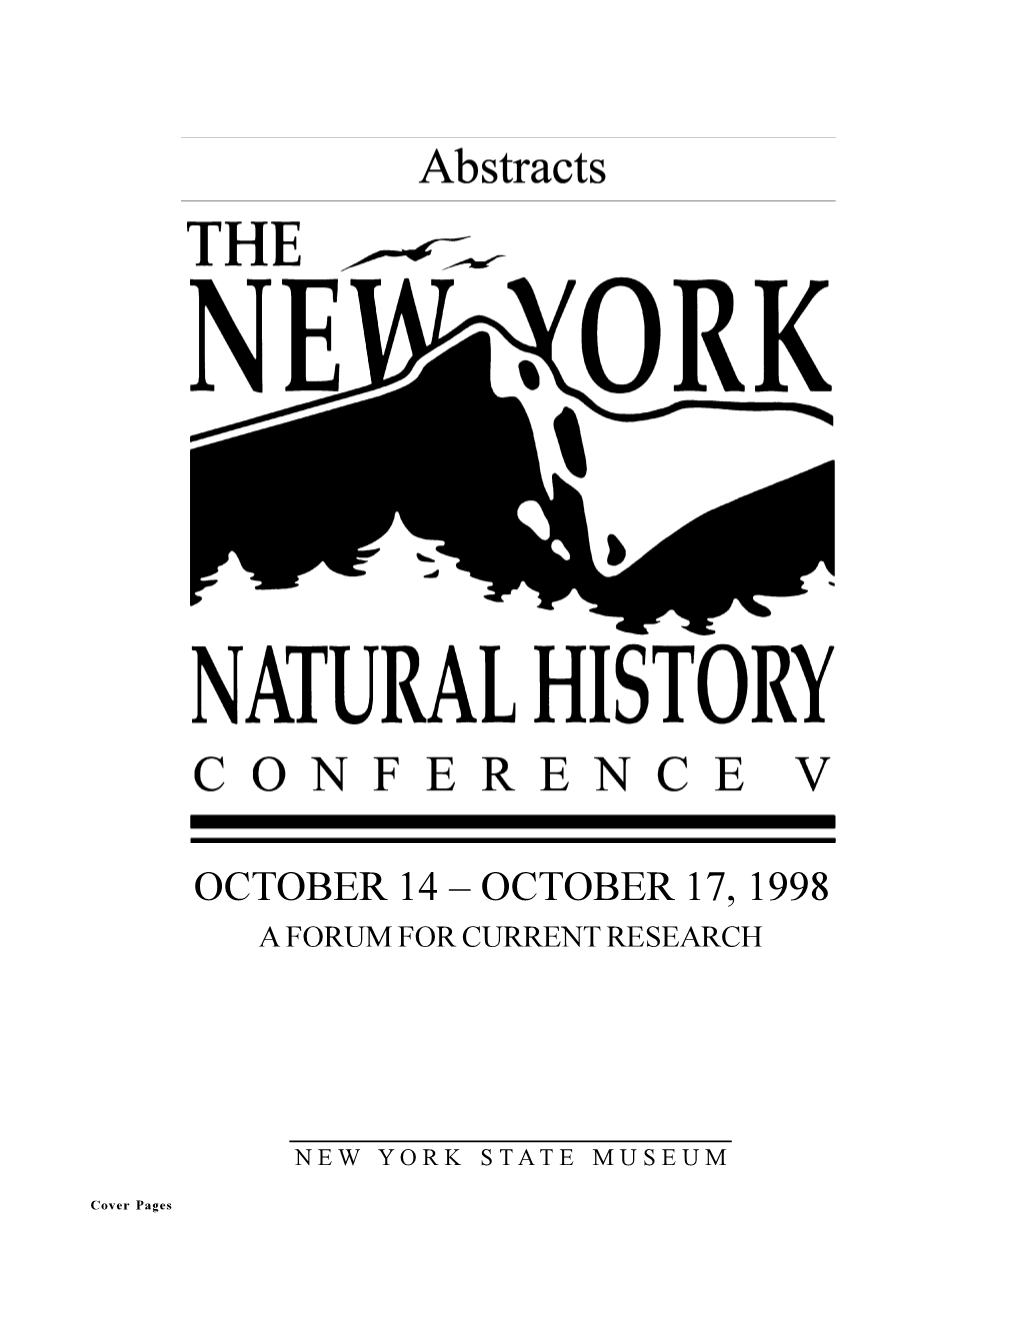 NENHC 1998 Abstracts